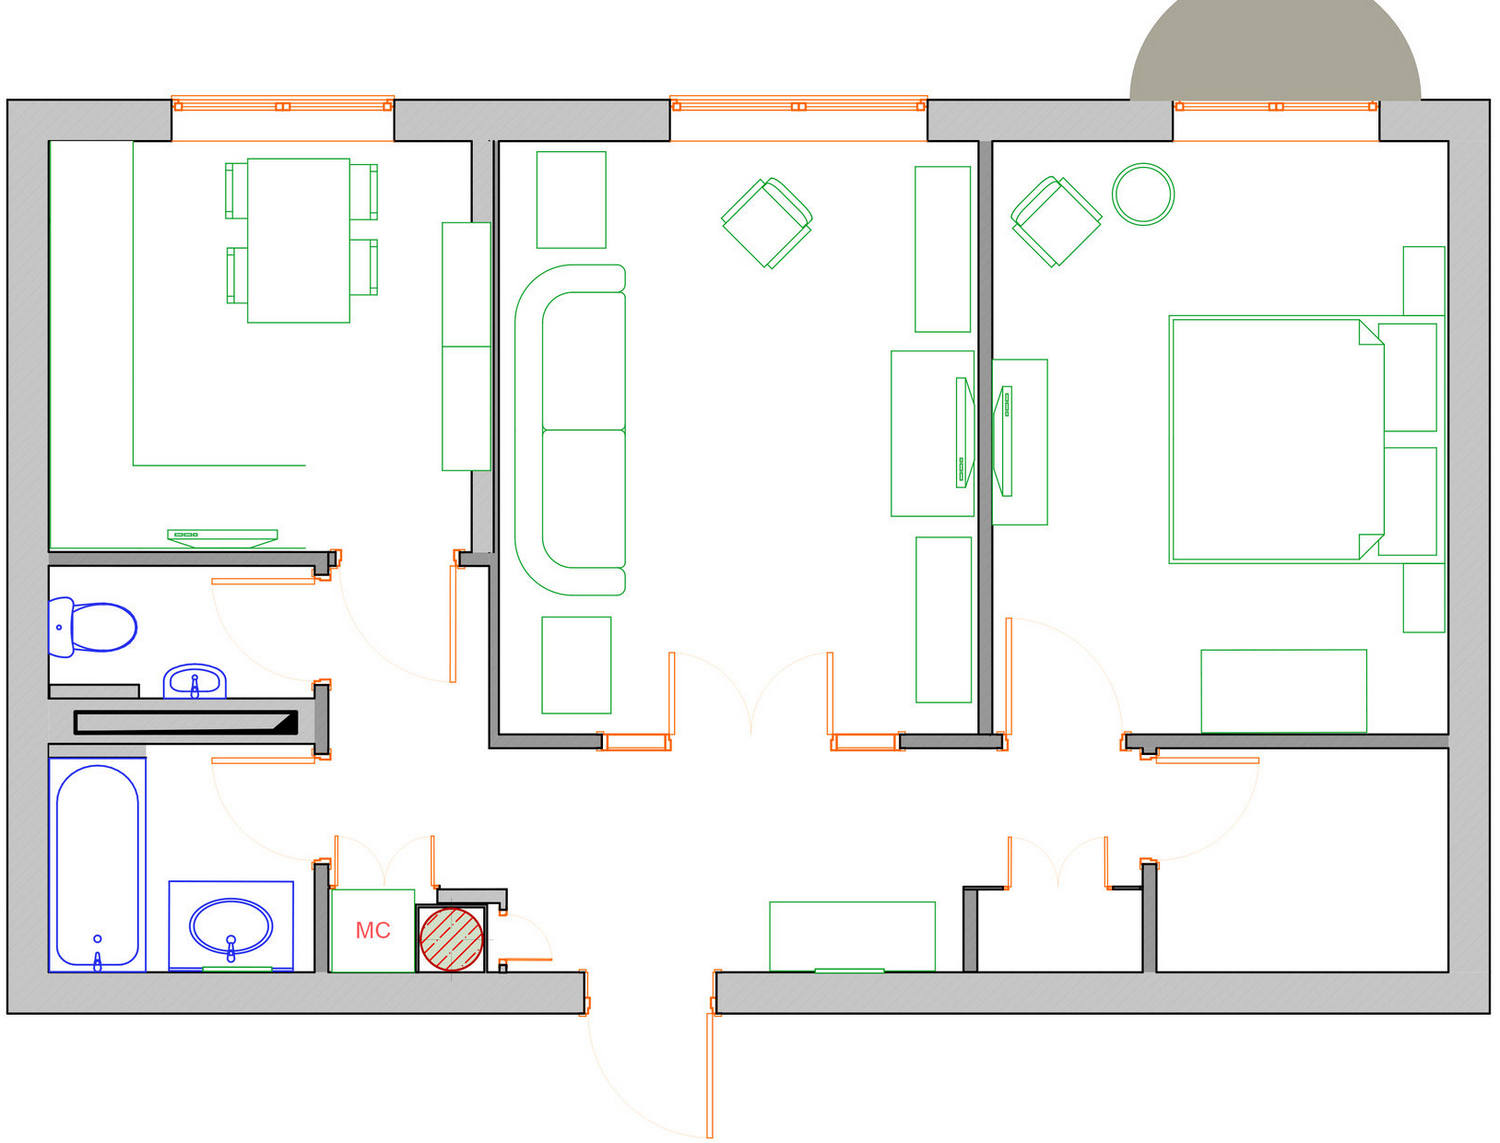 Lakás lélekkel berendezve - hagyományos elosztású 75m2-es otthon modern klasszikus stílusban